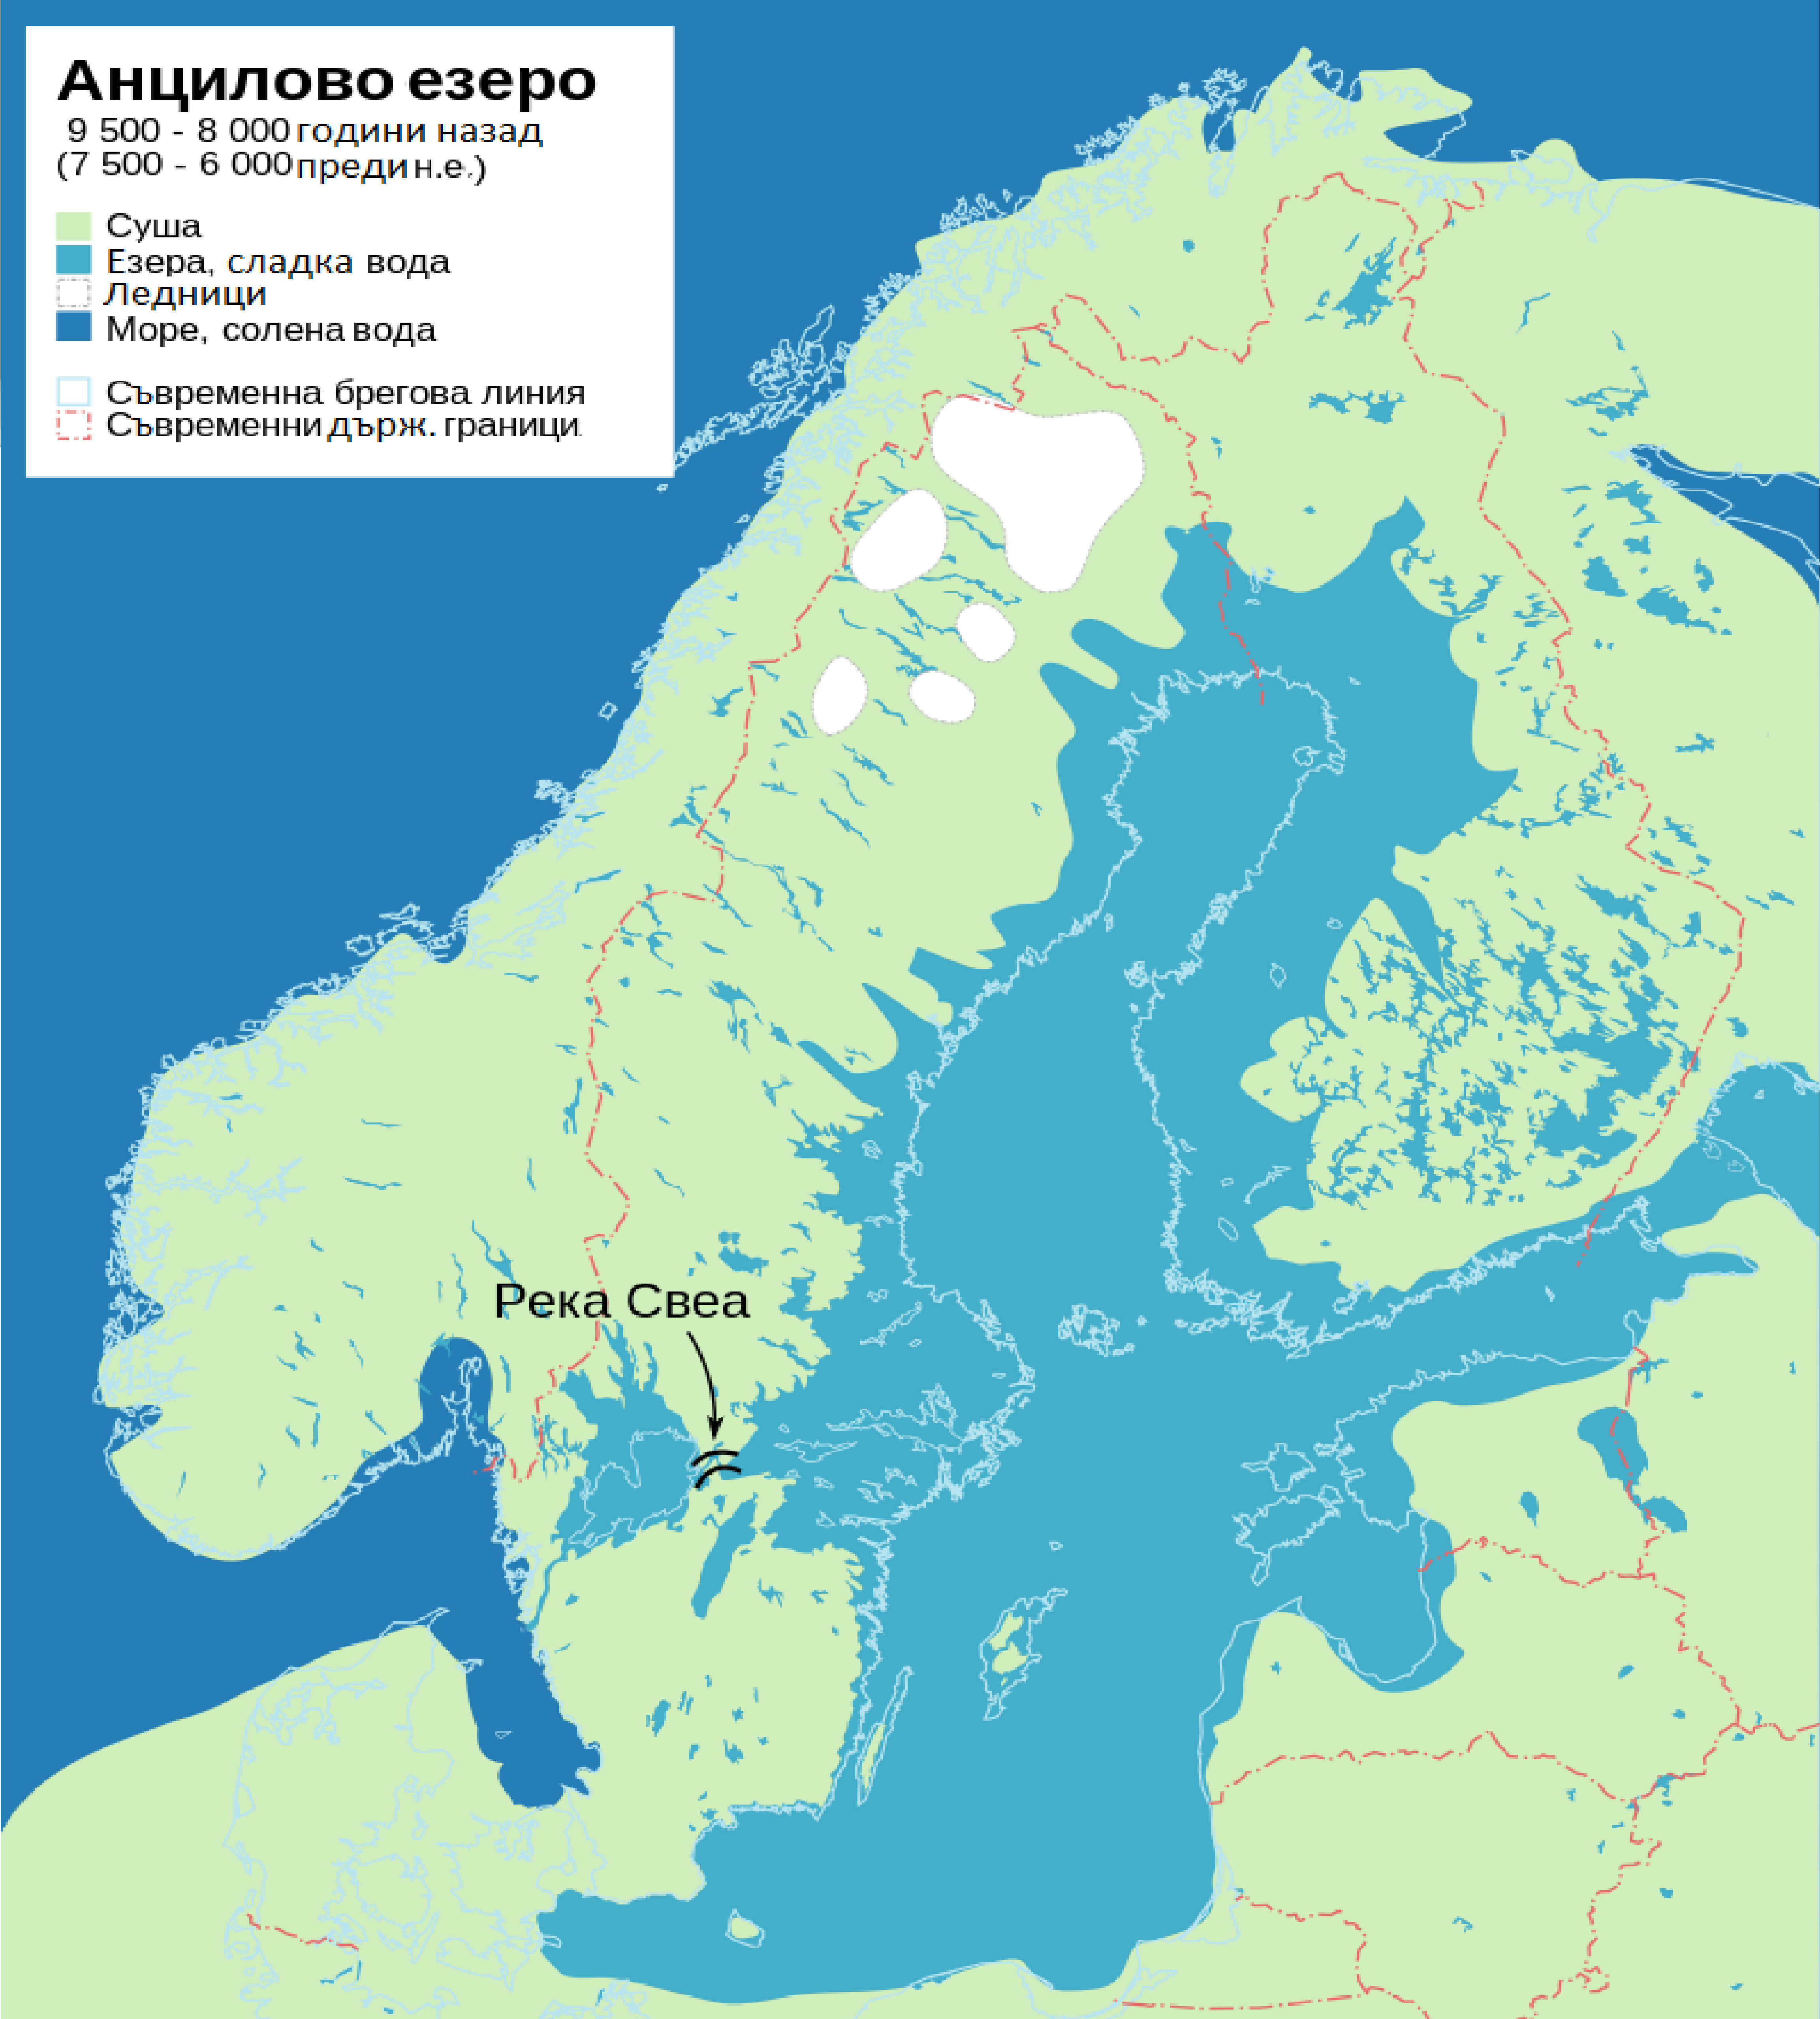 Балтийское море 10000 лет назад. Анциловое озеро Литориновое море. Балтийское море на карте. Балтийское ледниковое озеро.